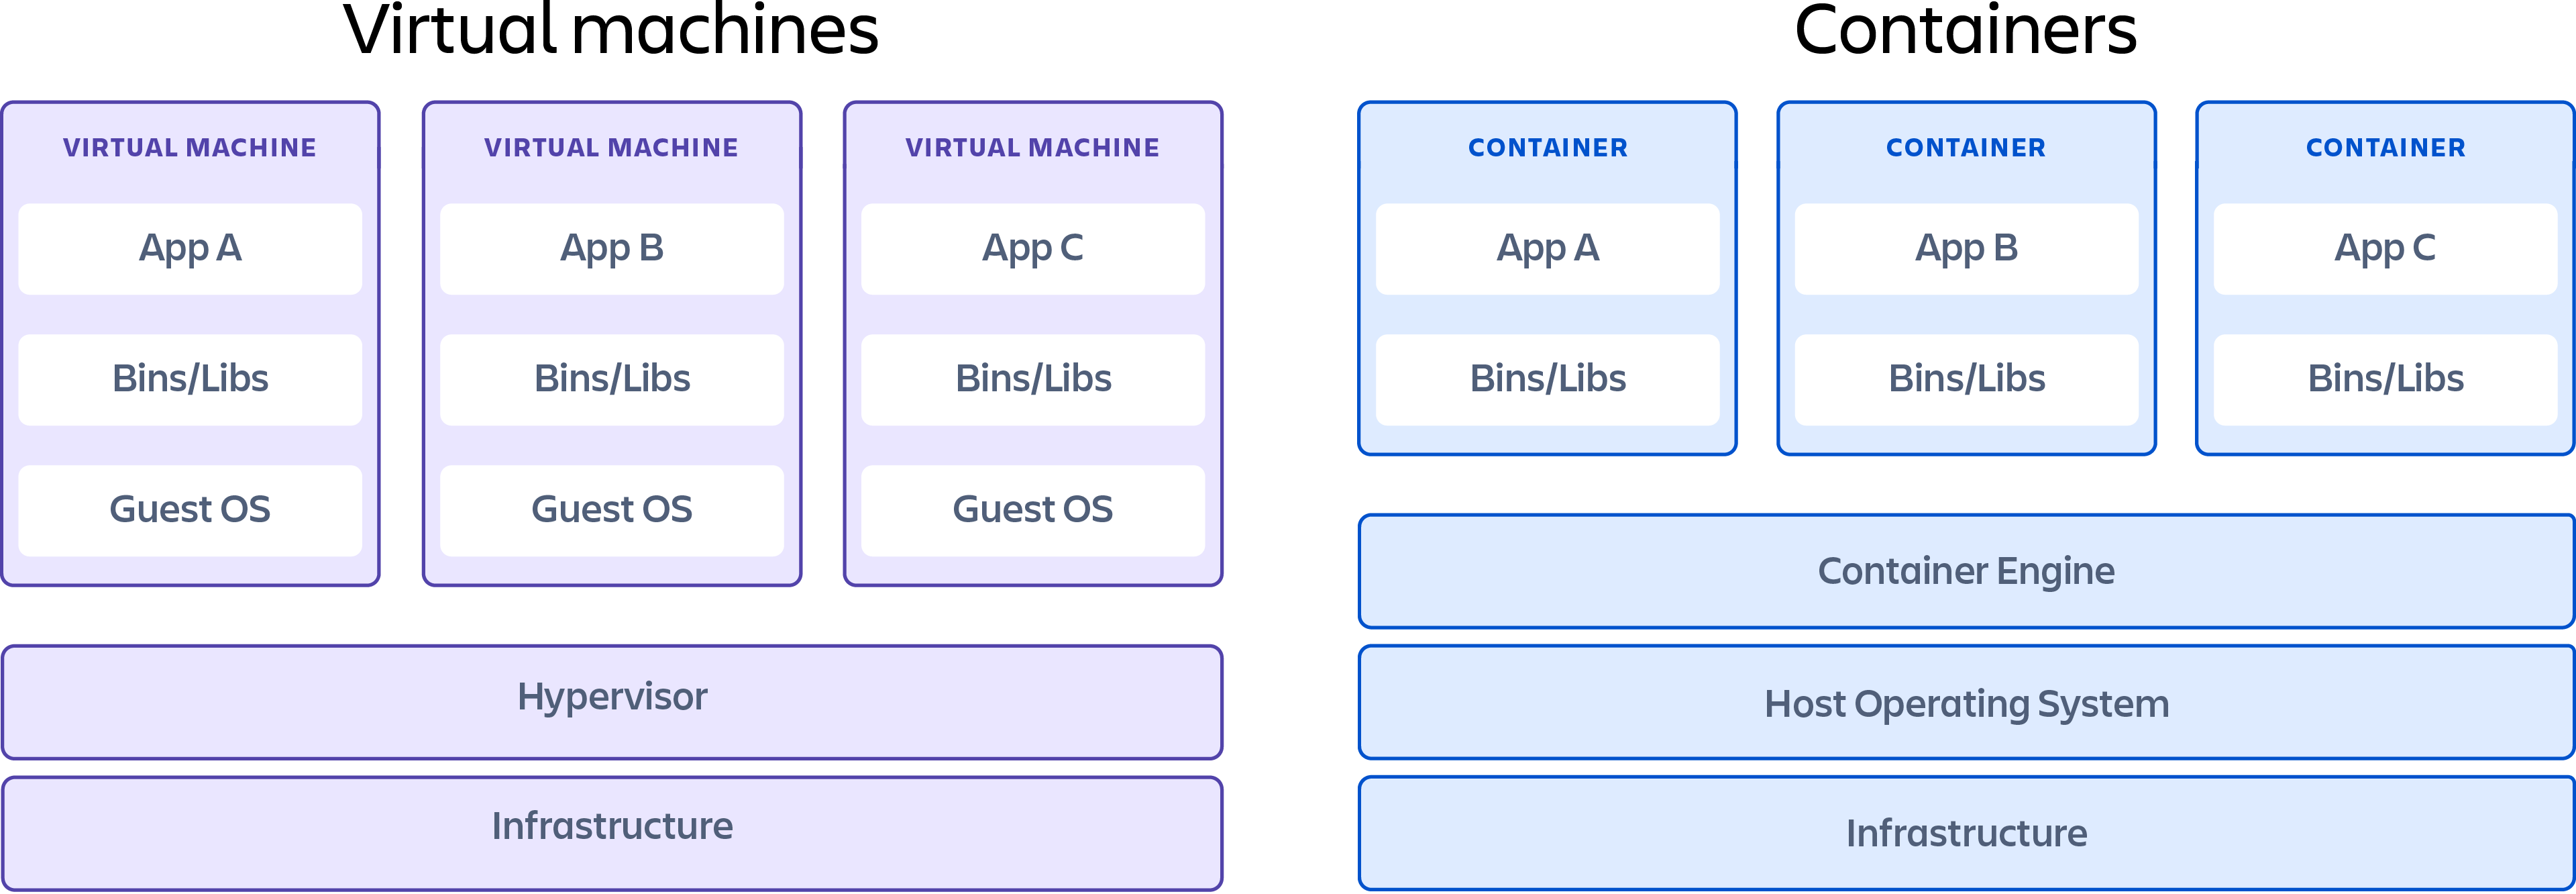 Un container che mostra le differenze tra macchine virtuali e container.